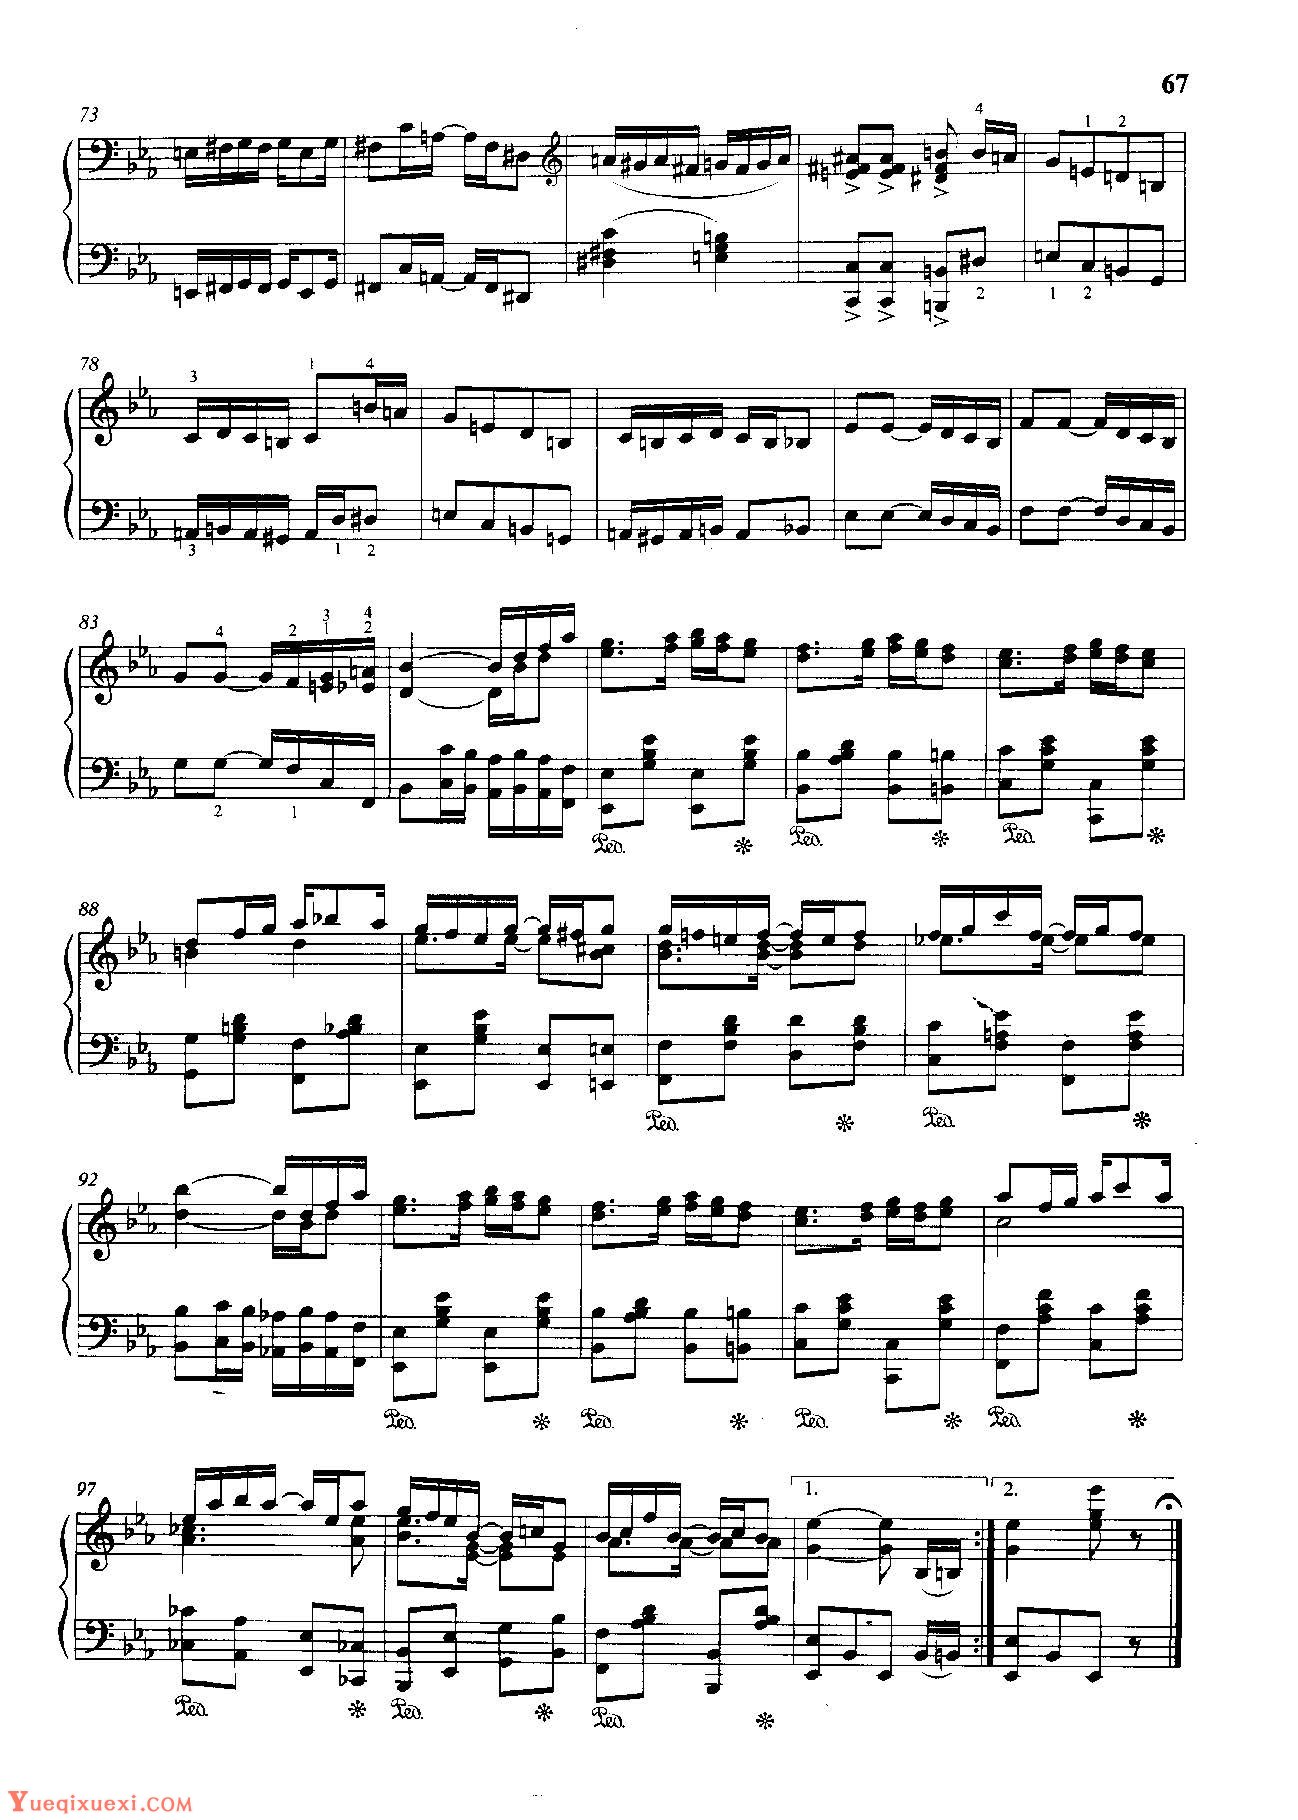 雷格泰姆钢琴乐谱《尤金妮亚》雷格泰姆之王斯科特·乔普林